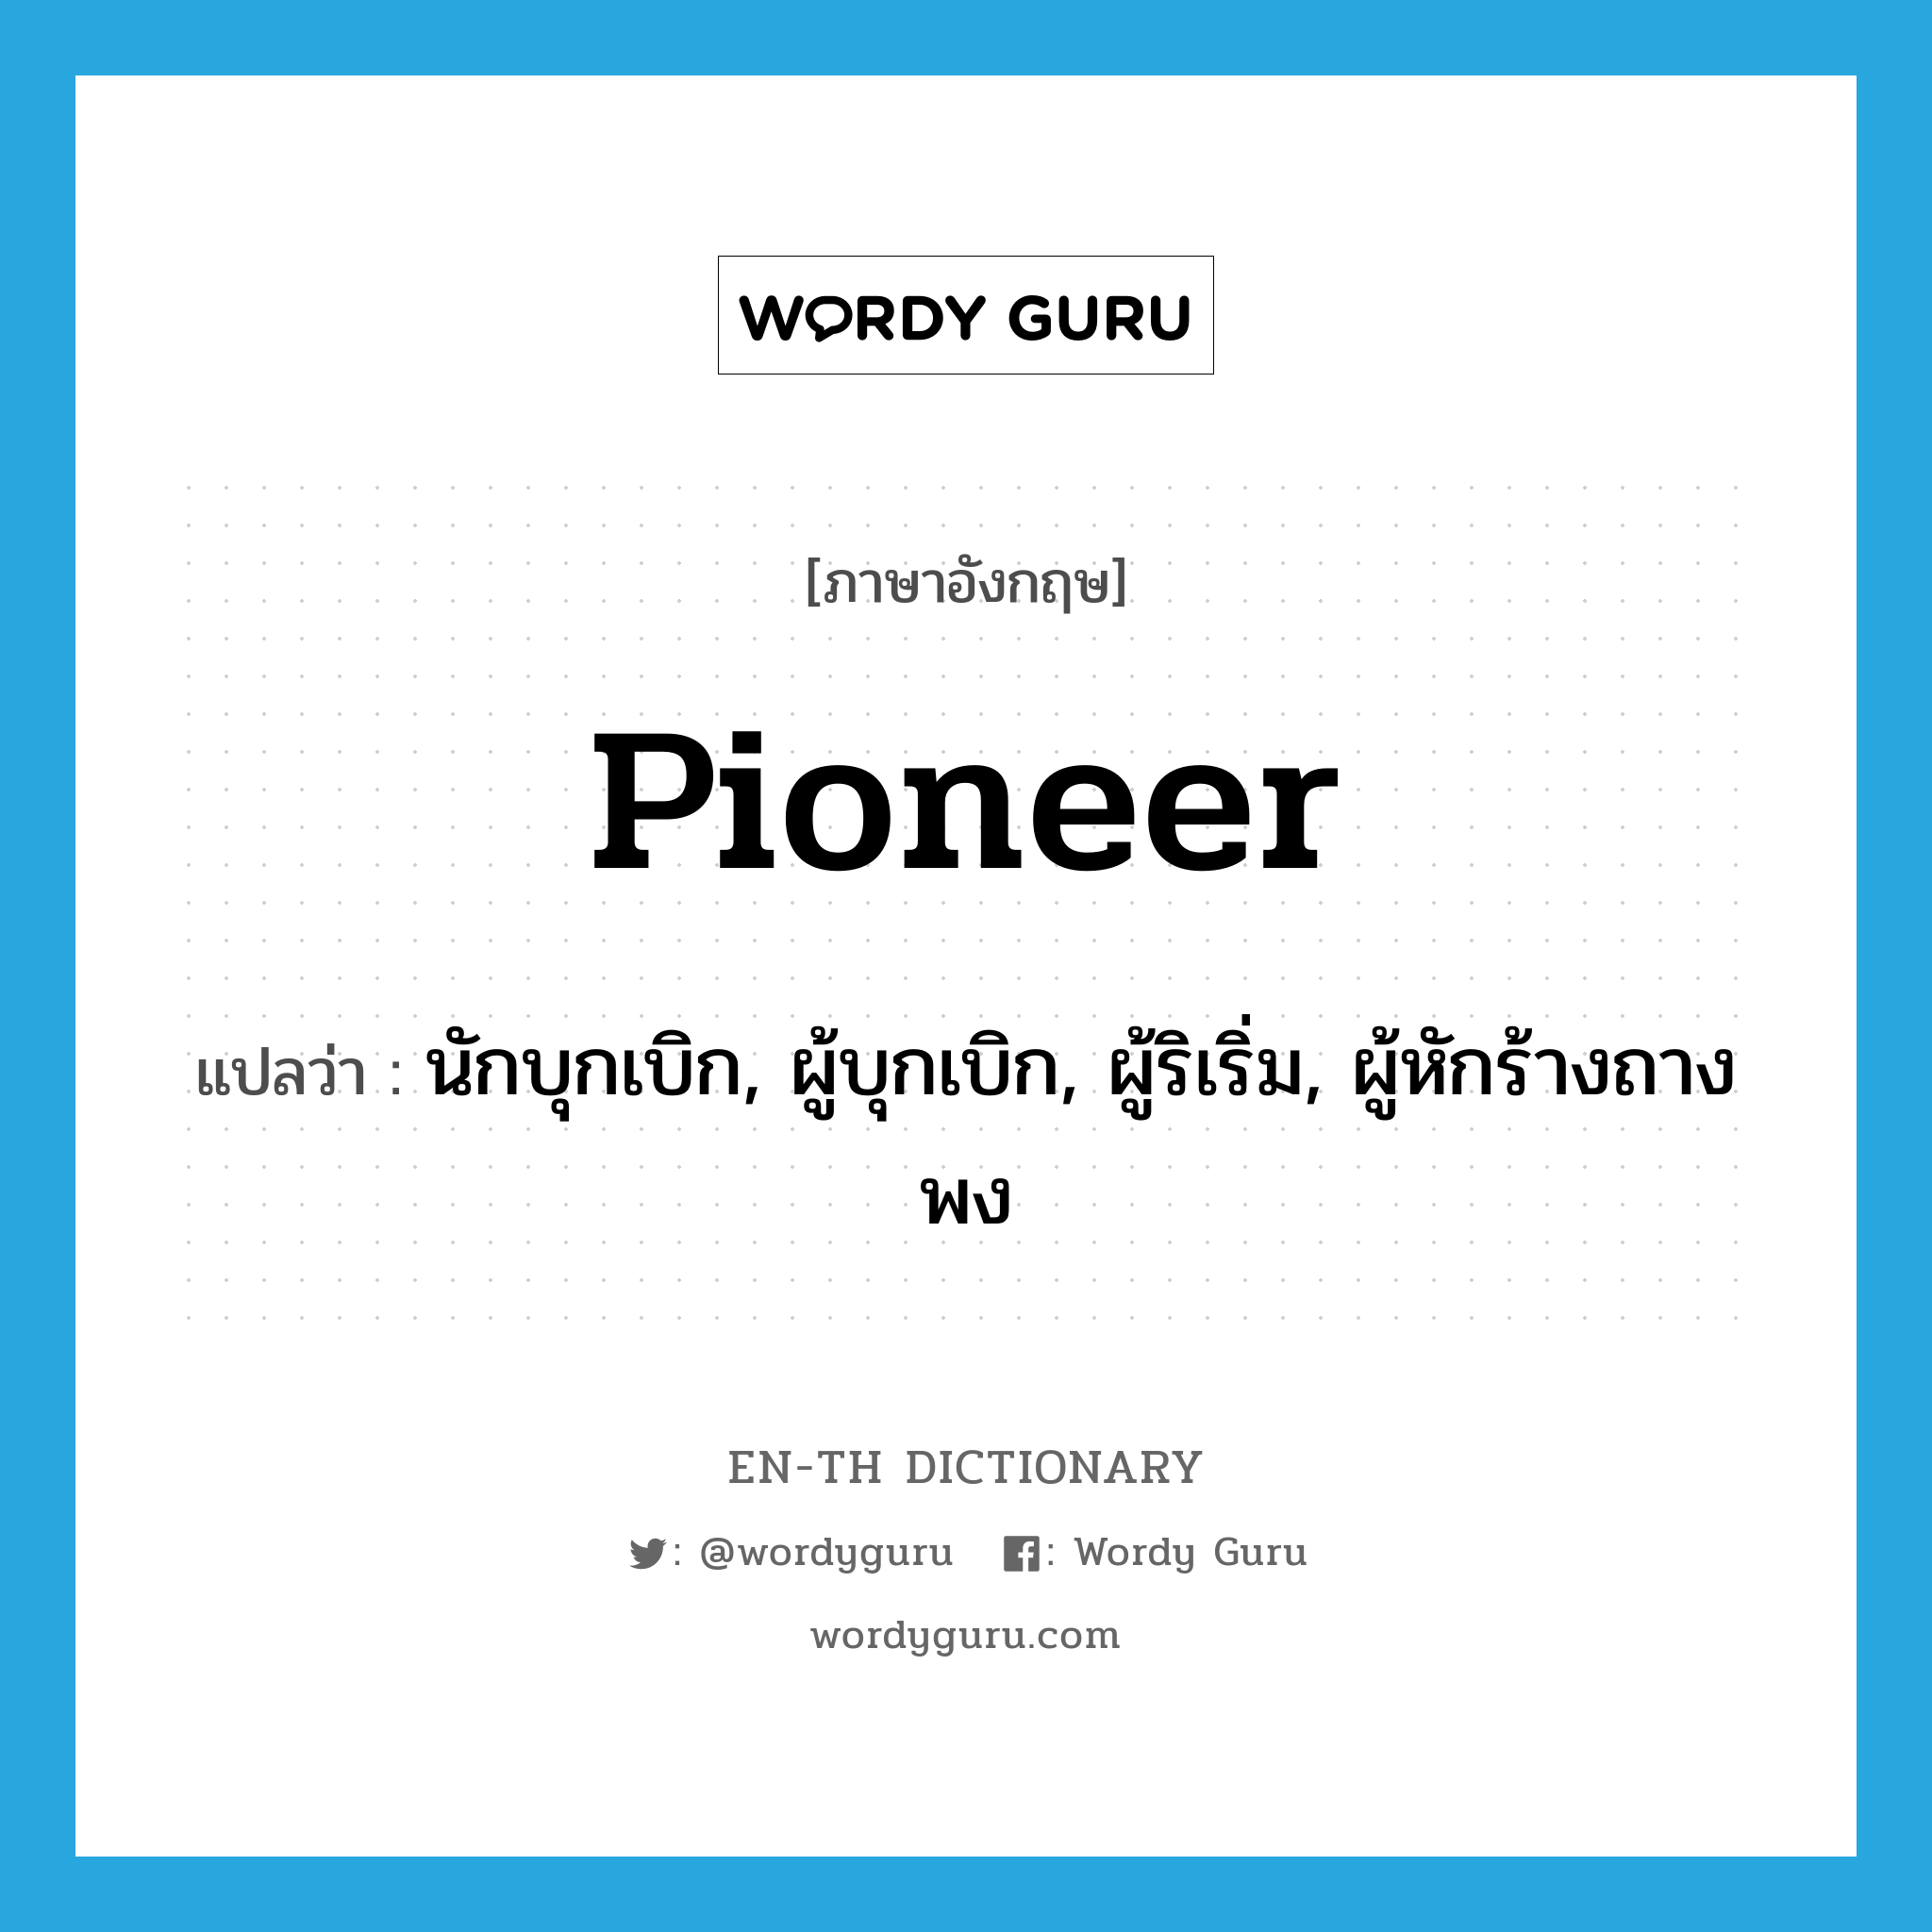 pioneer แปลว่า?, คำศัพท์ภาษาอังกฤษ pioneer แปลว่า นักบุกเบิก, ผู้บุกเบิก, ผู้ริเริ่ม, ผู้หักร้างถางพง ประเภท N หมวด N